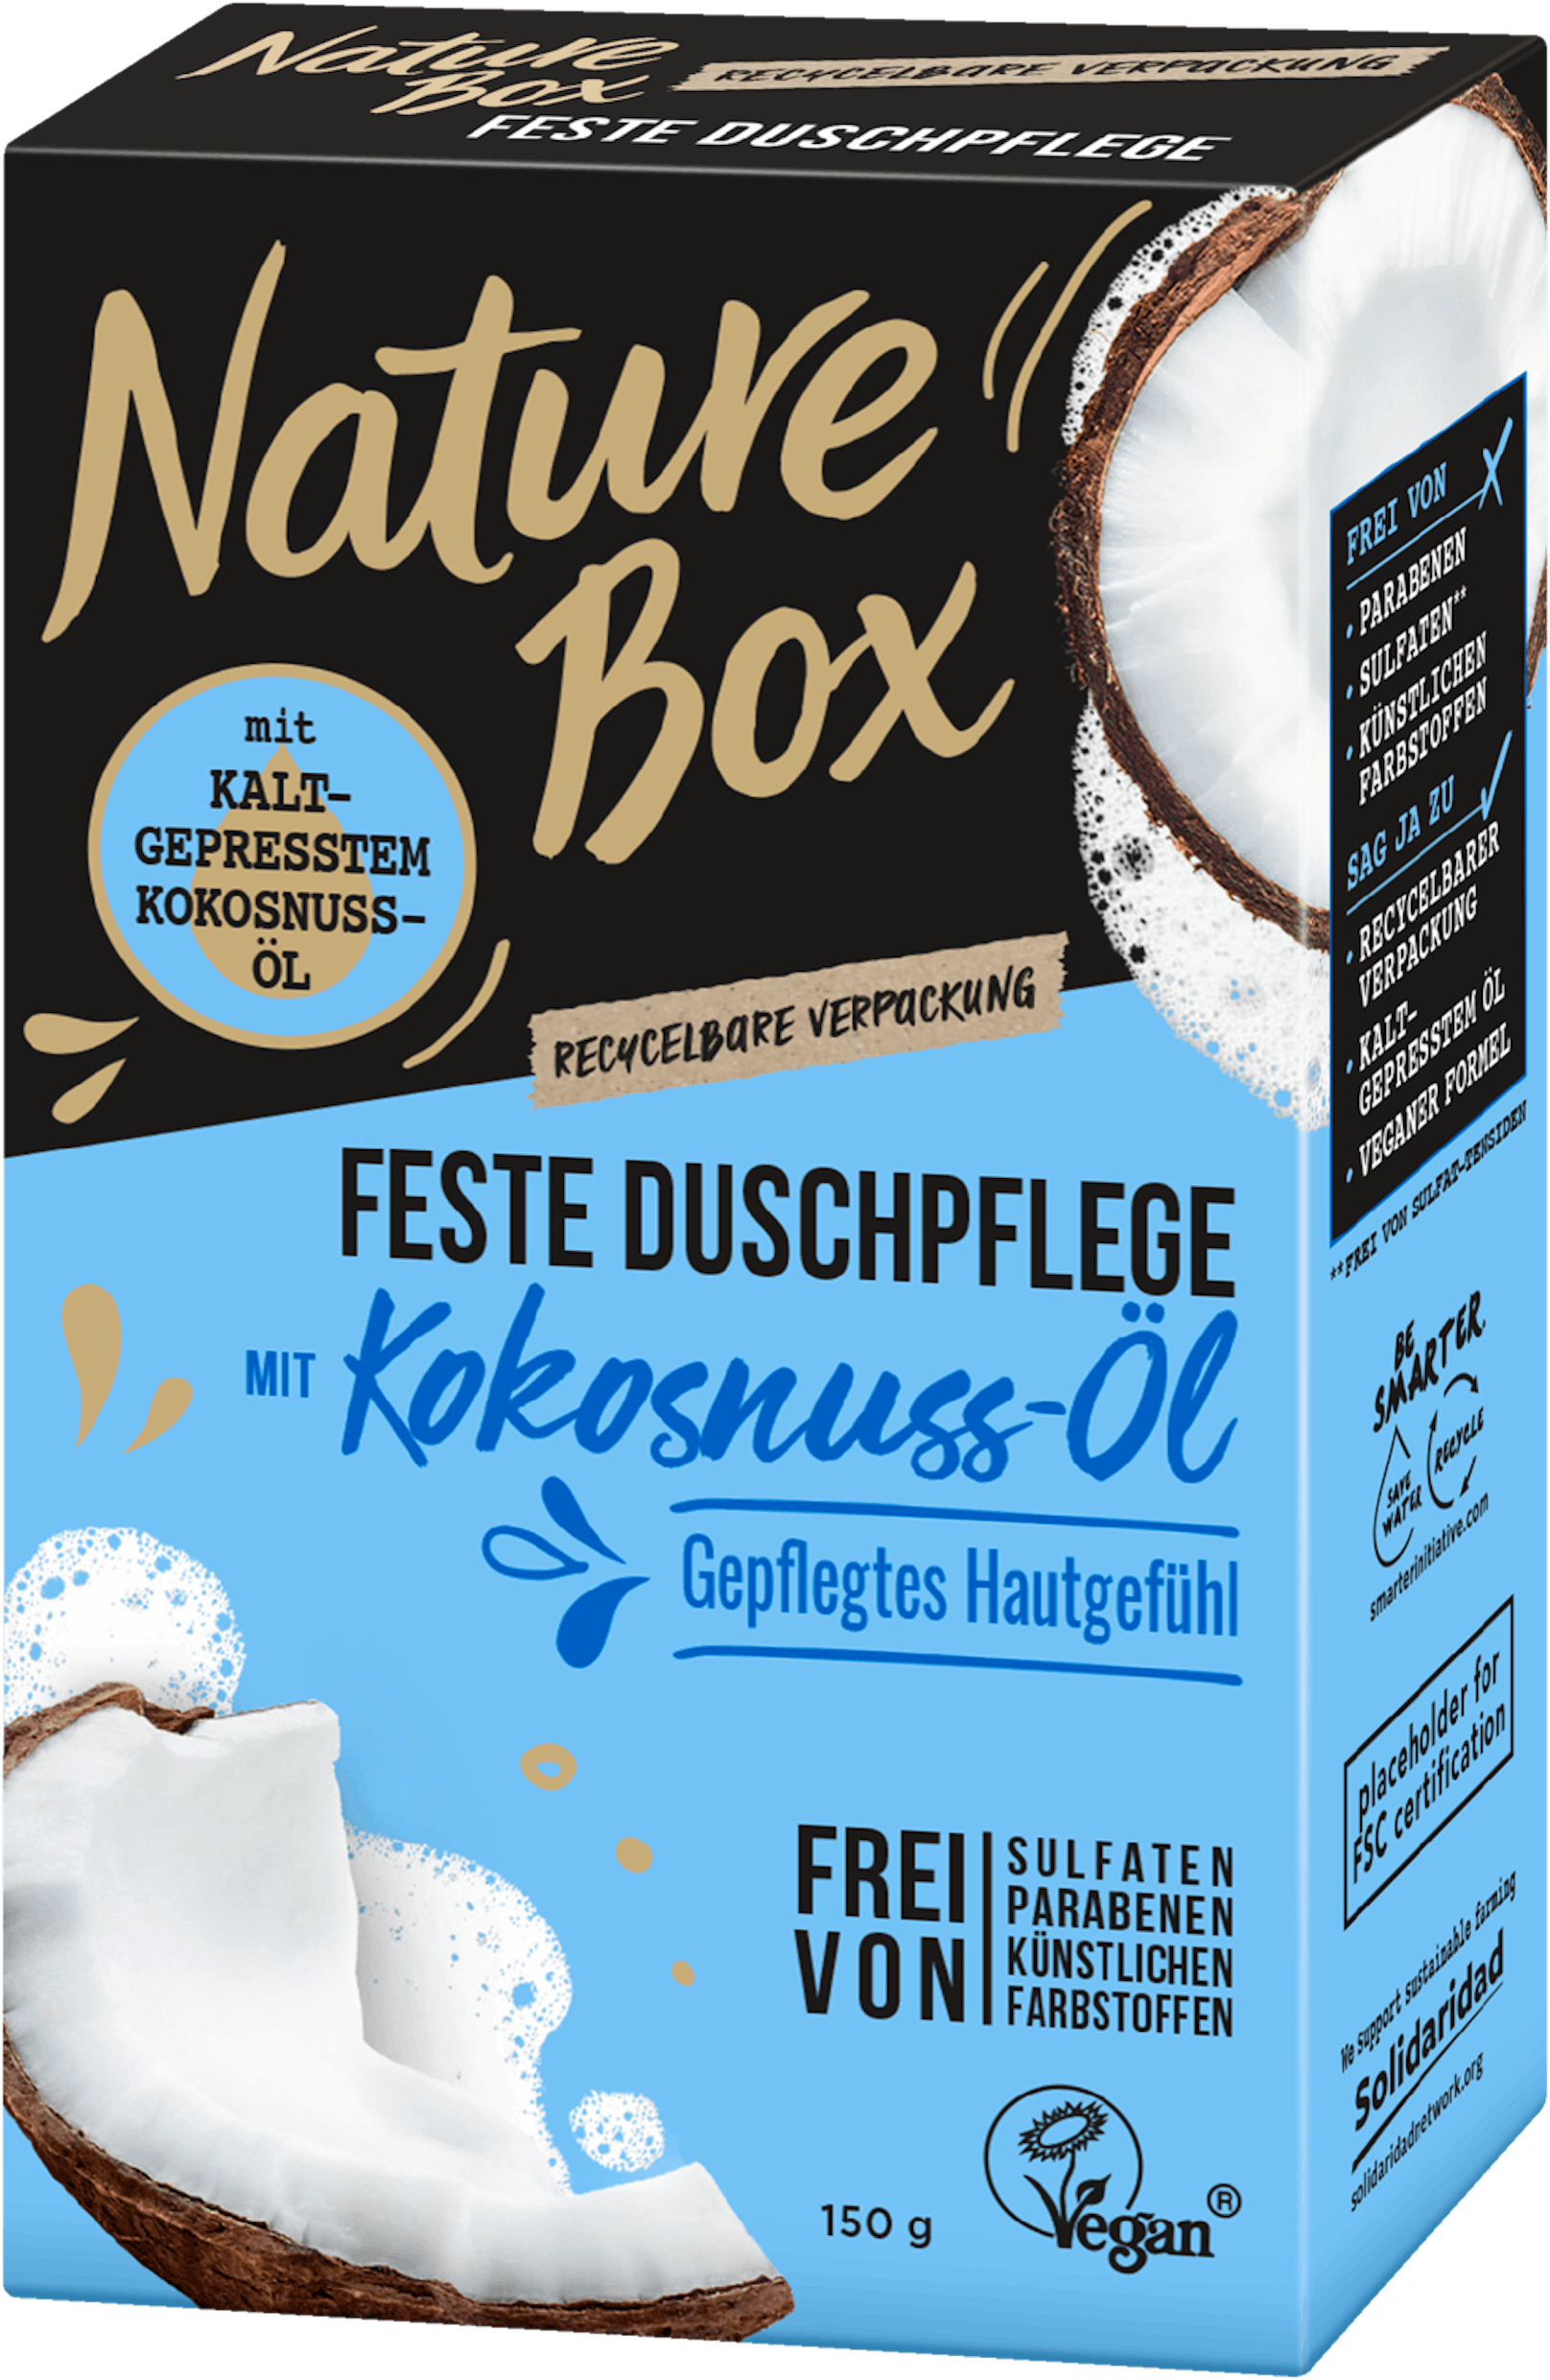 Die <strong>feste Duschpflege</strong> von <strong>Nature Box </strong>um 4,49 Euro kühlt mit seinem kaltgepresstem Öl aus Kokosnuss und bewahrt die Haut vor dem Austrocknen.<br>